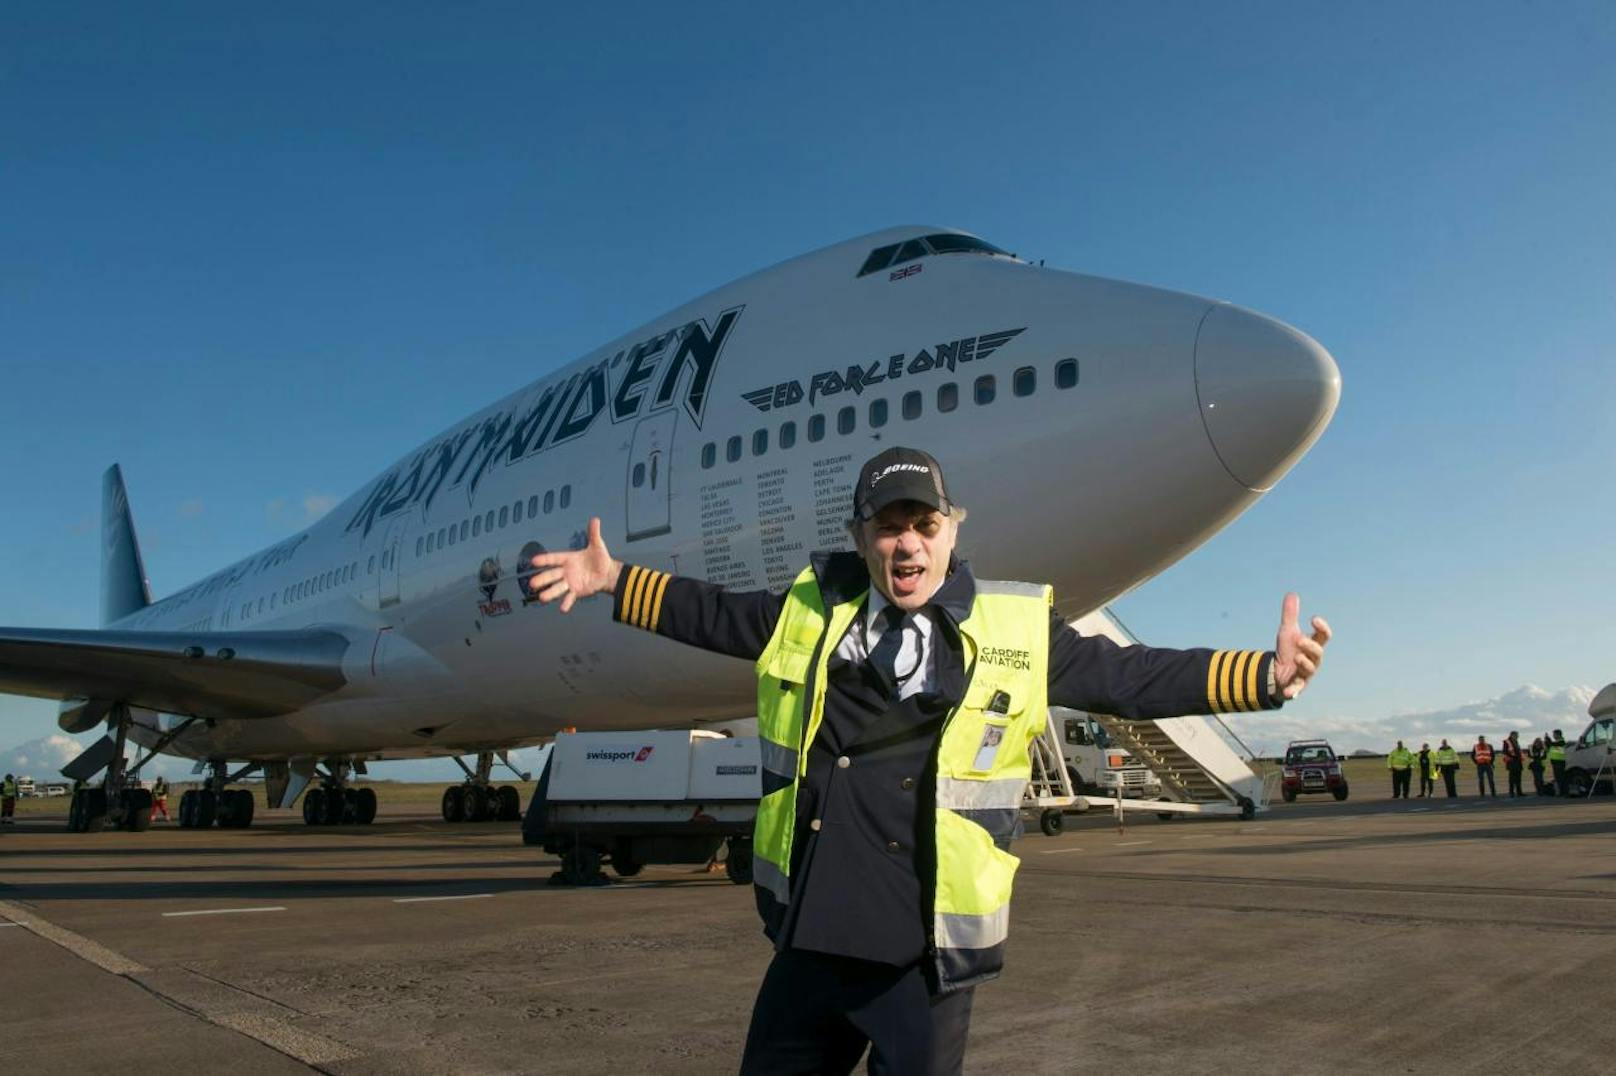 Iron-Maiden-Sänger und Pilot Bruce Dickinson fliegt am 27.10. für eine Lesung ein.